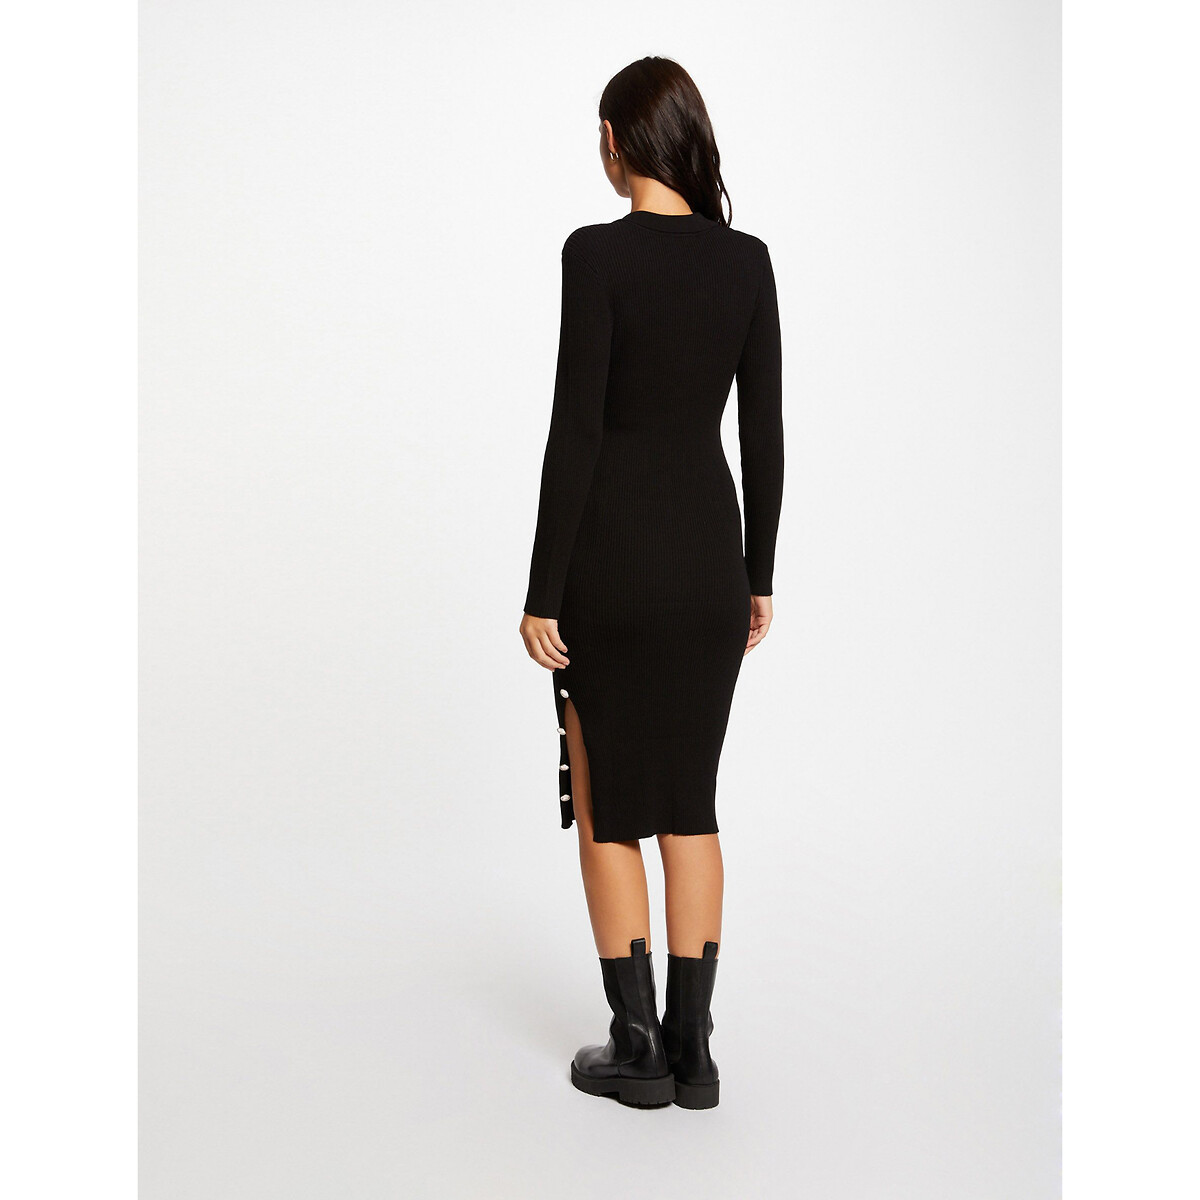 Платье-пуловер облегающее со шлицей пуговицами и длинными рукавами  XL черный LaRedoute, размер XL - фото 4